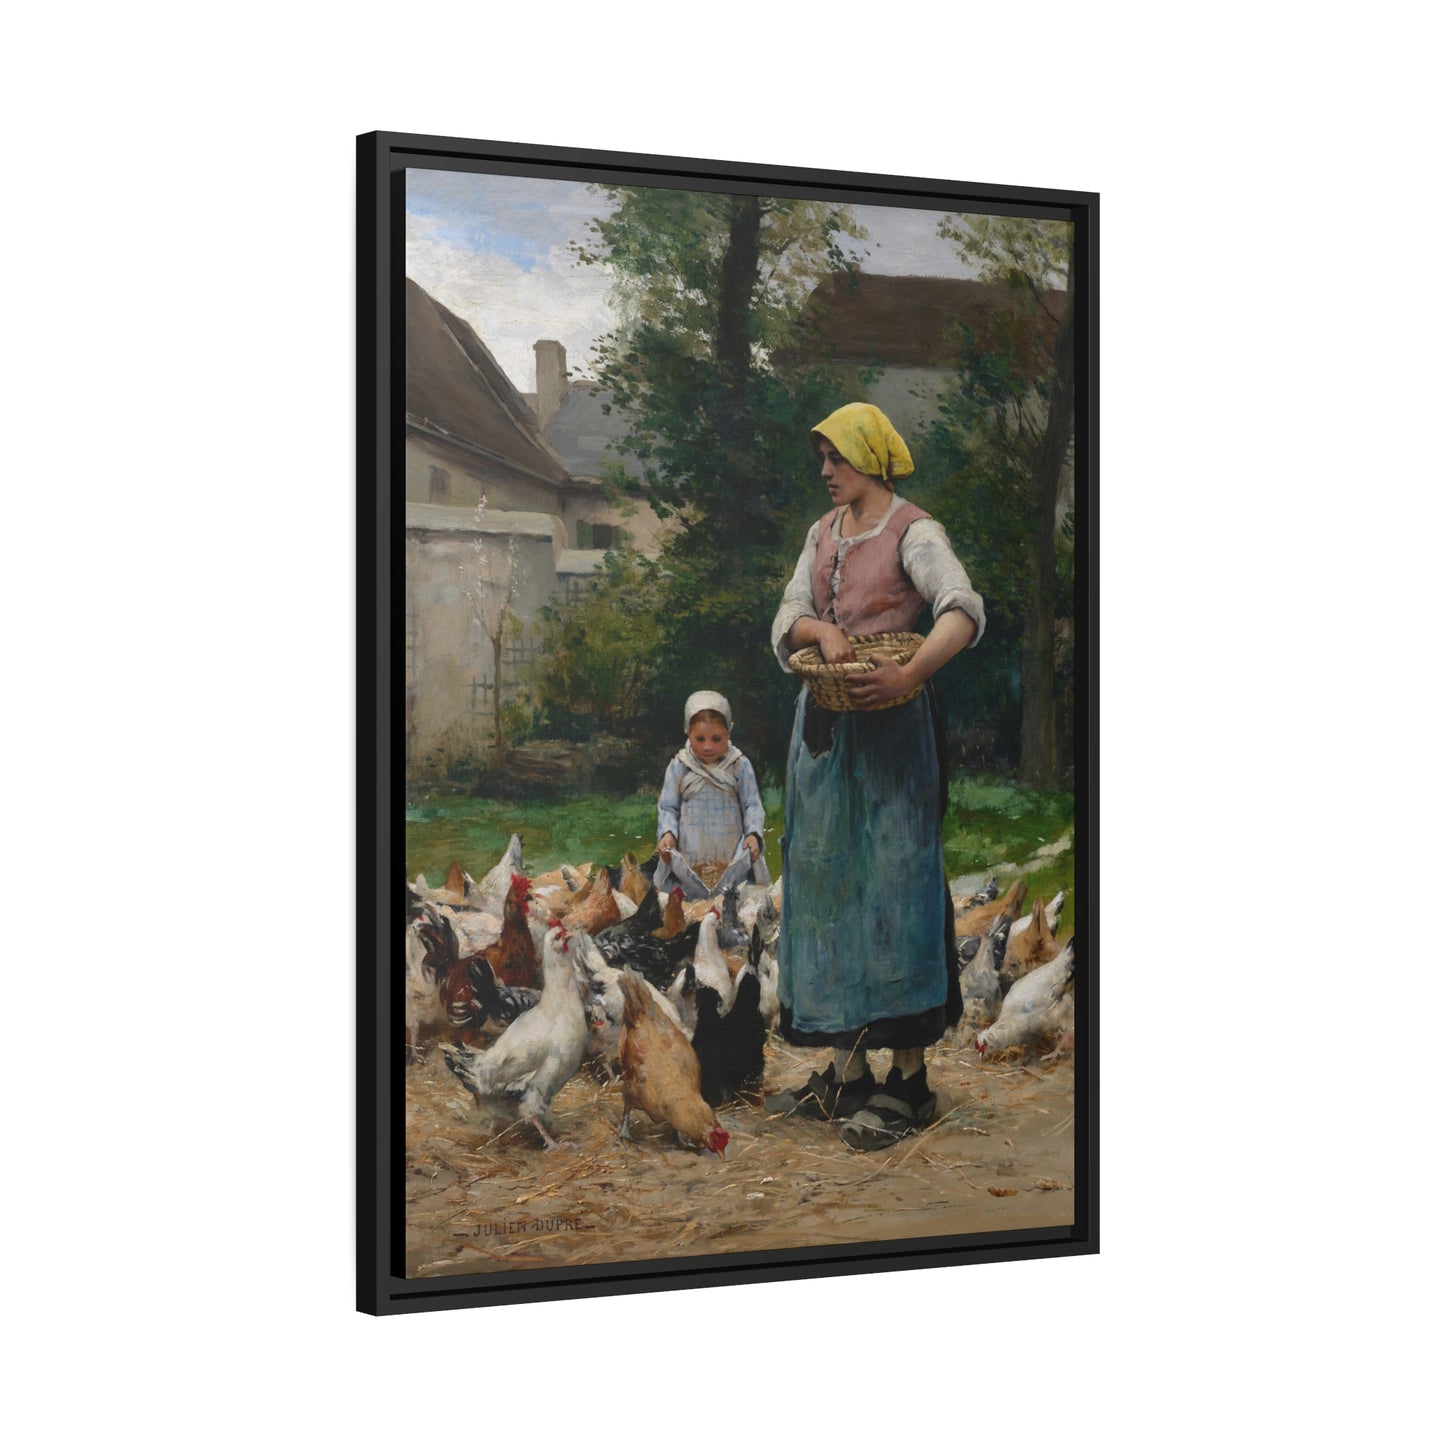 Julien Dupre: "Femme avec des Poules" - Framed Canvas Reproduction